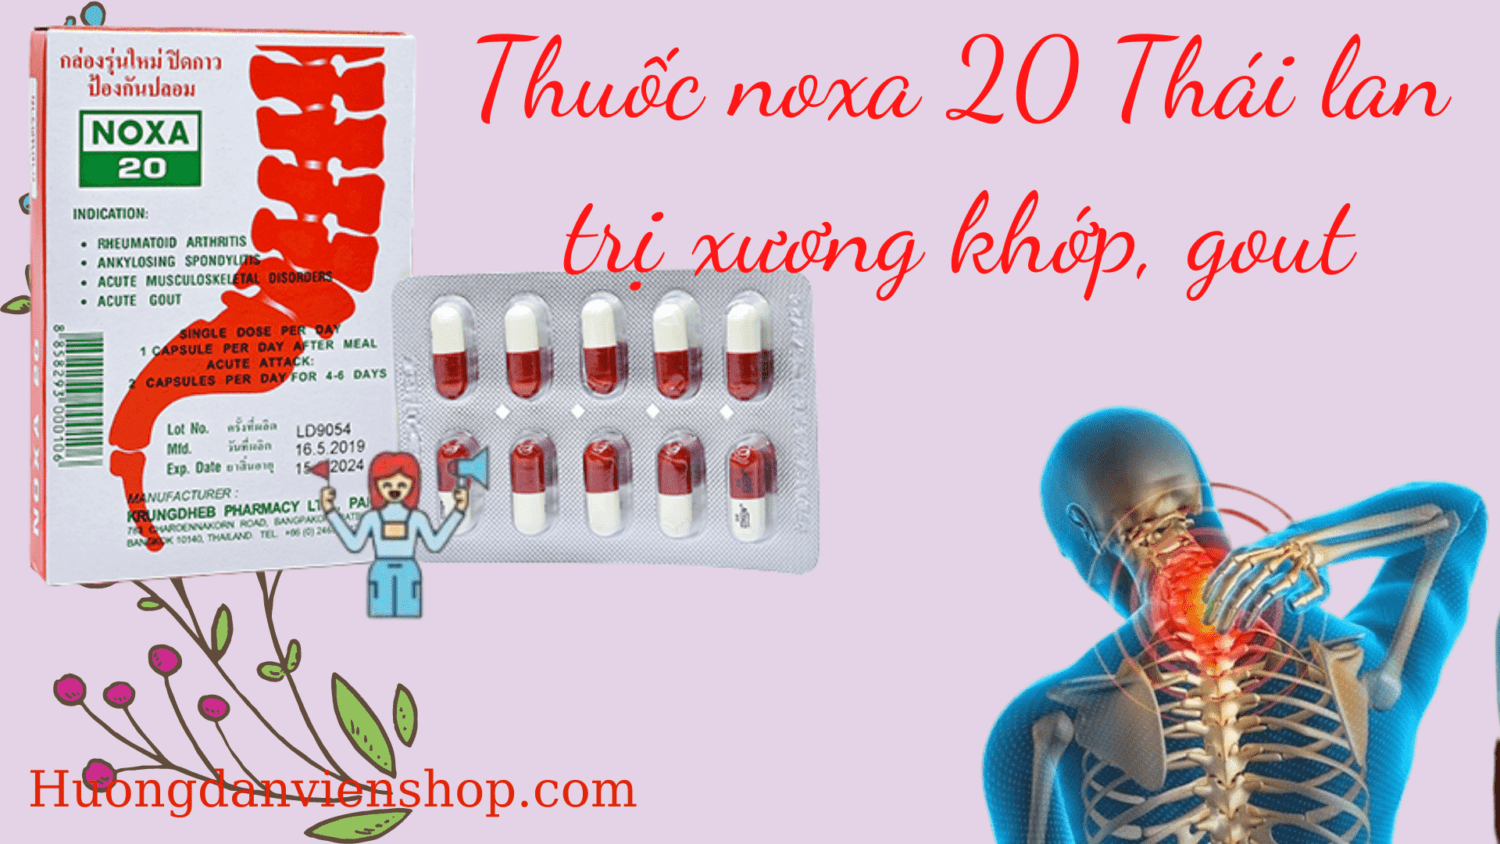 Thuoc Noxa 20 Thai Lan Tri Xuong Khop Gout